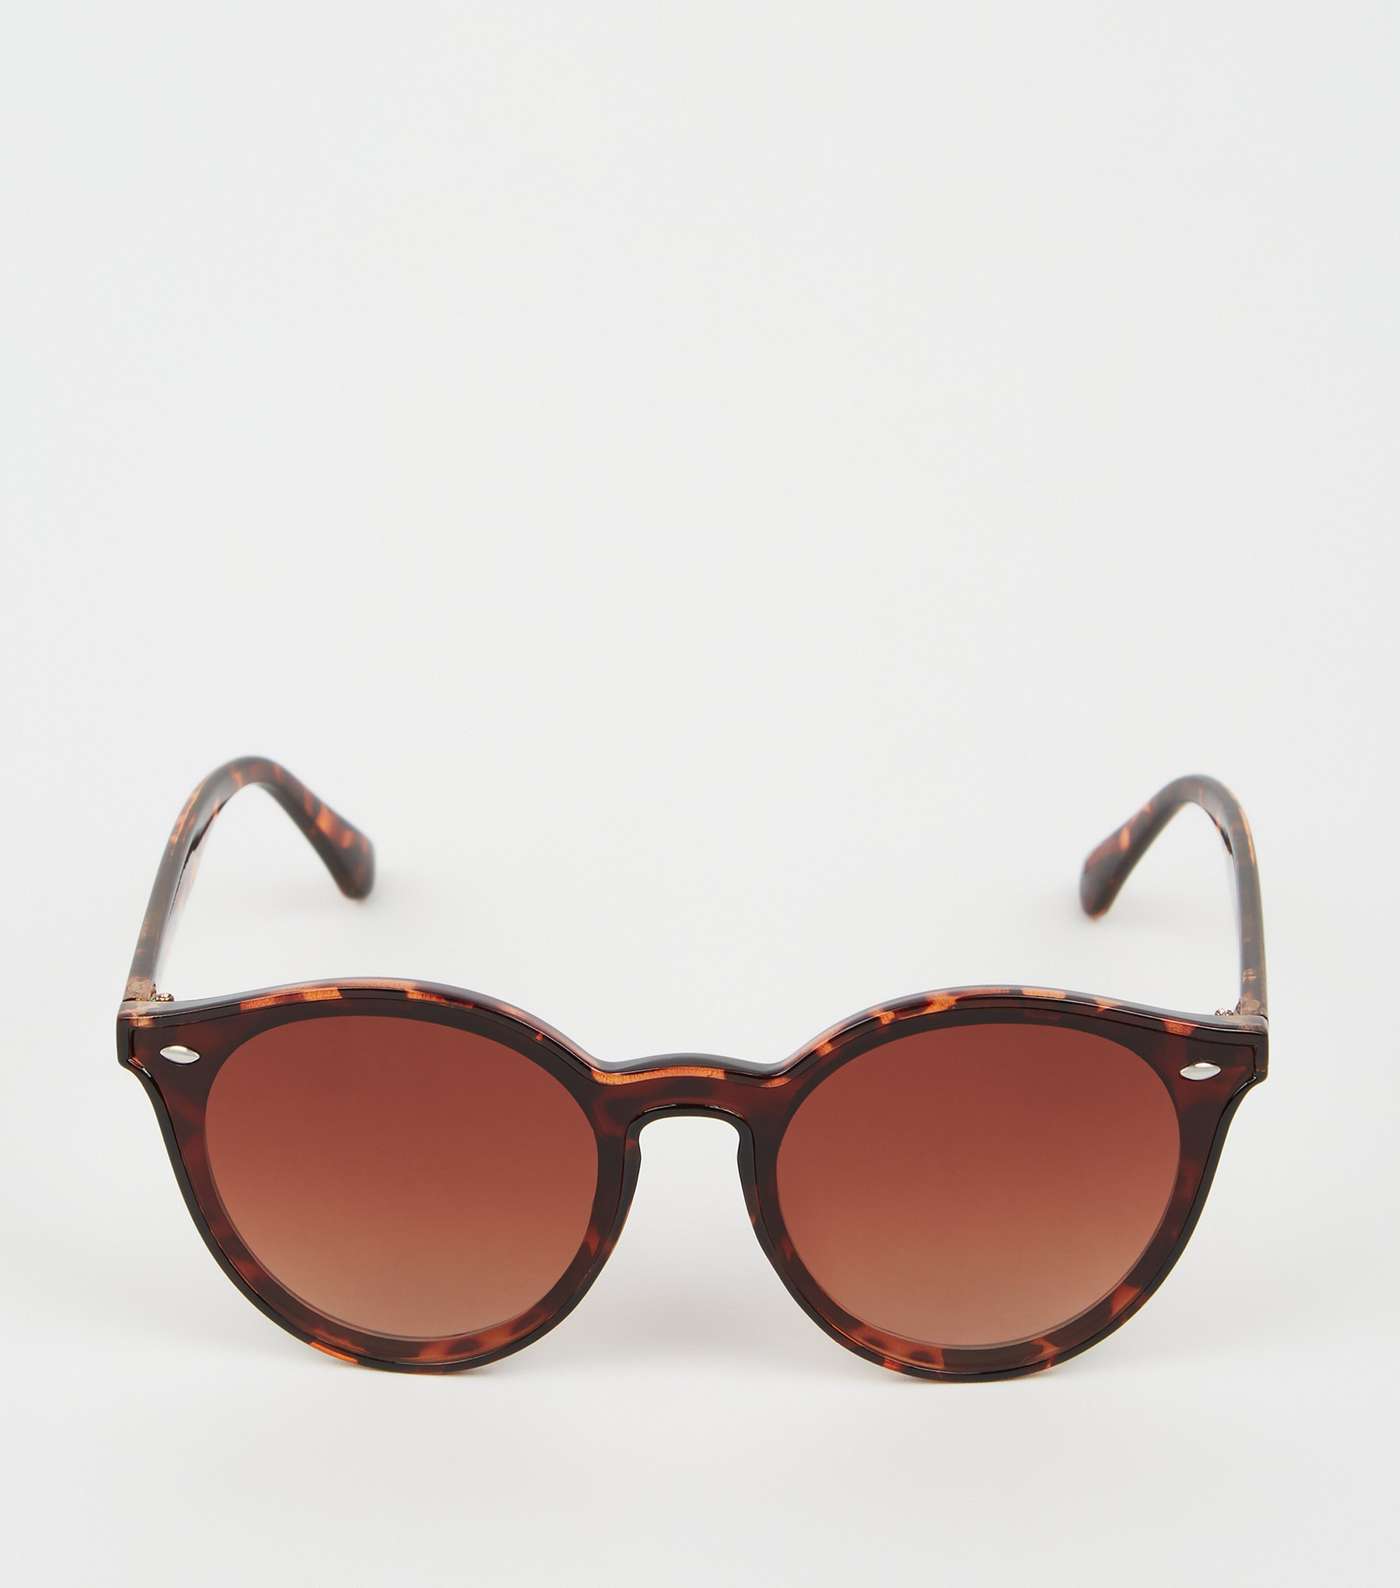 Girls Dark Brown Tortoiseshell Effect Sunglasses Image 3